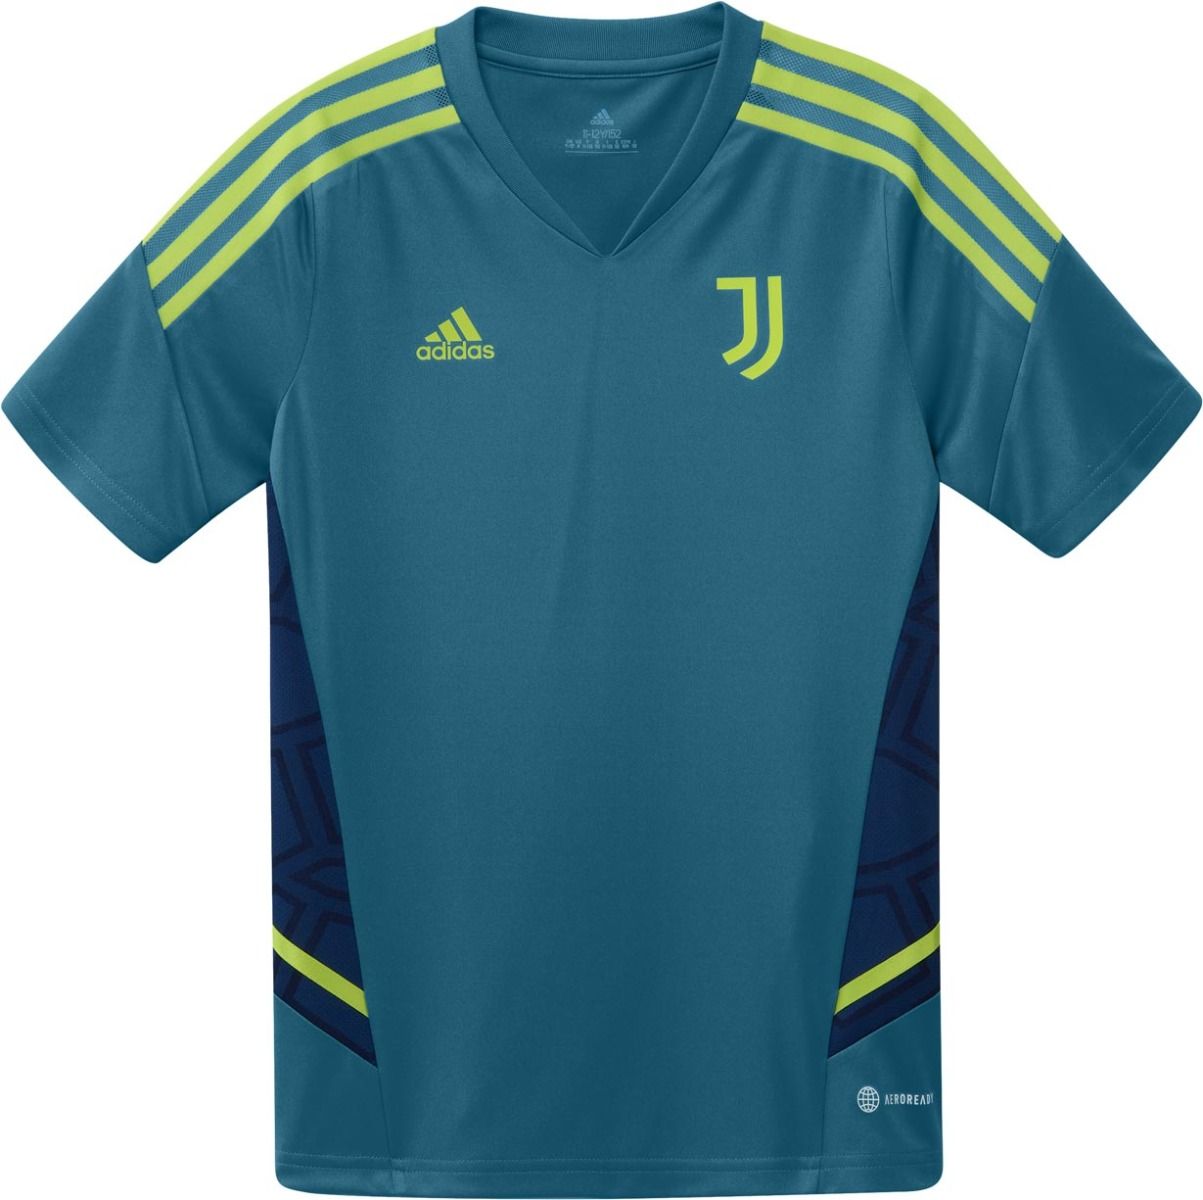 doorboren Ooit Keer terug adidas Juventus Youth Training Jersey - Juventus Apparel | Soccer Village